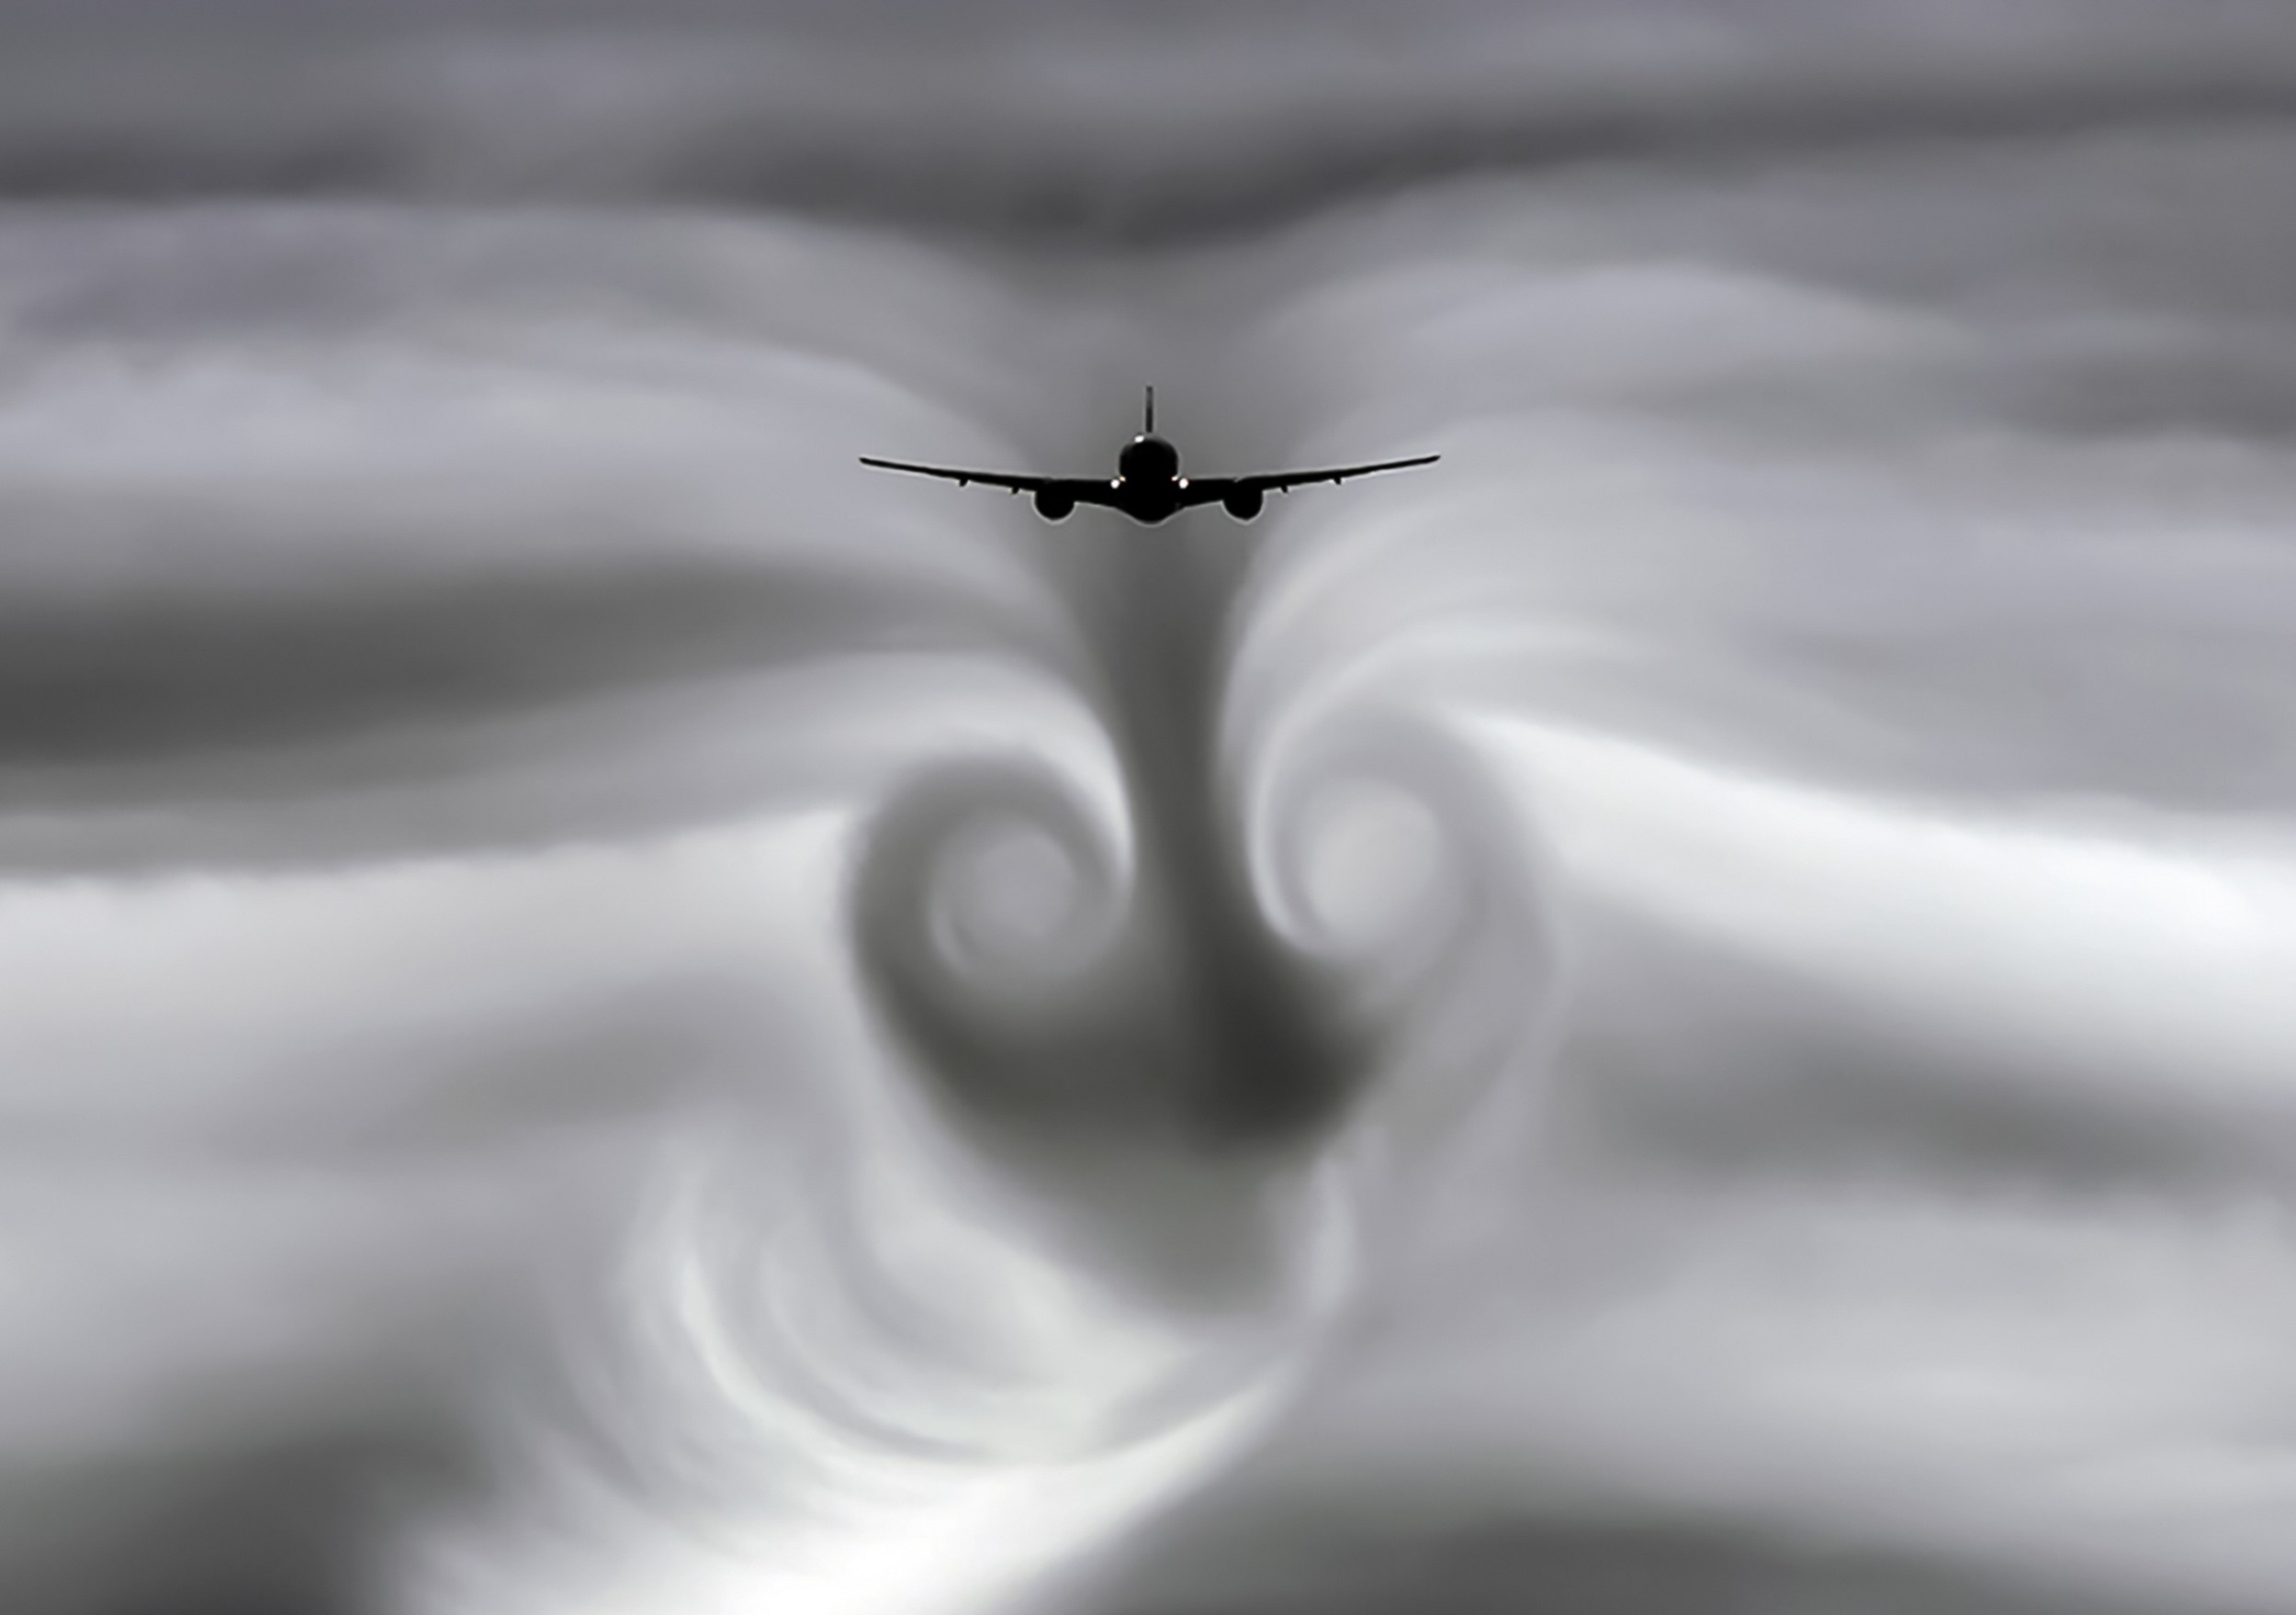 Des turbulences de sillage derrière un avion, un phénomène spectaculaire mais dangereux pour les autres avions. © hlxandr, Adobe Stock